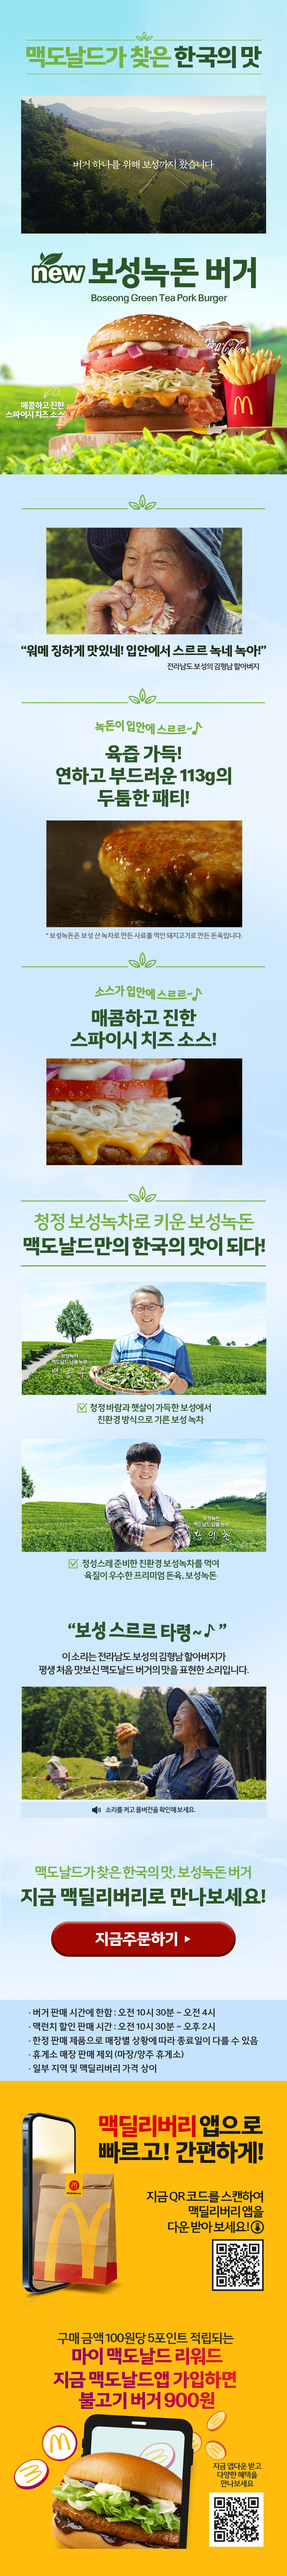 맥도날드가 찾은 한국의 맛 보성녹돈버거